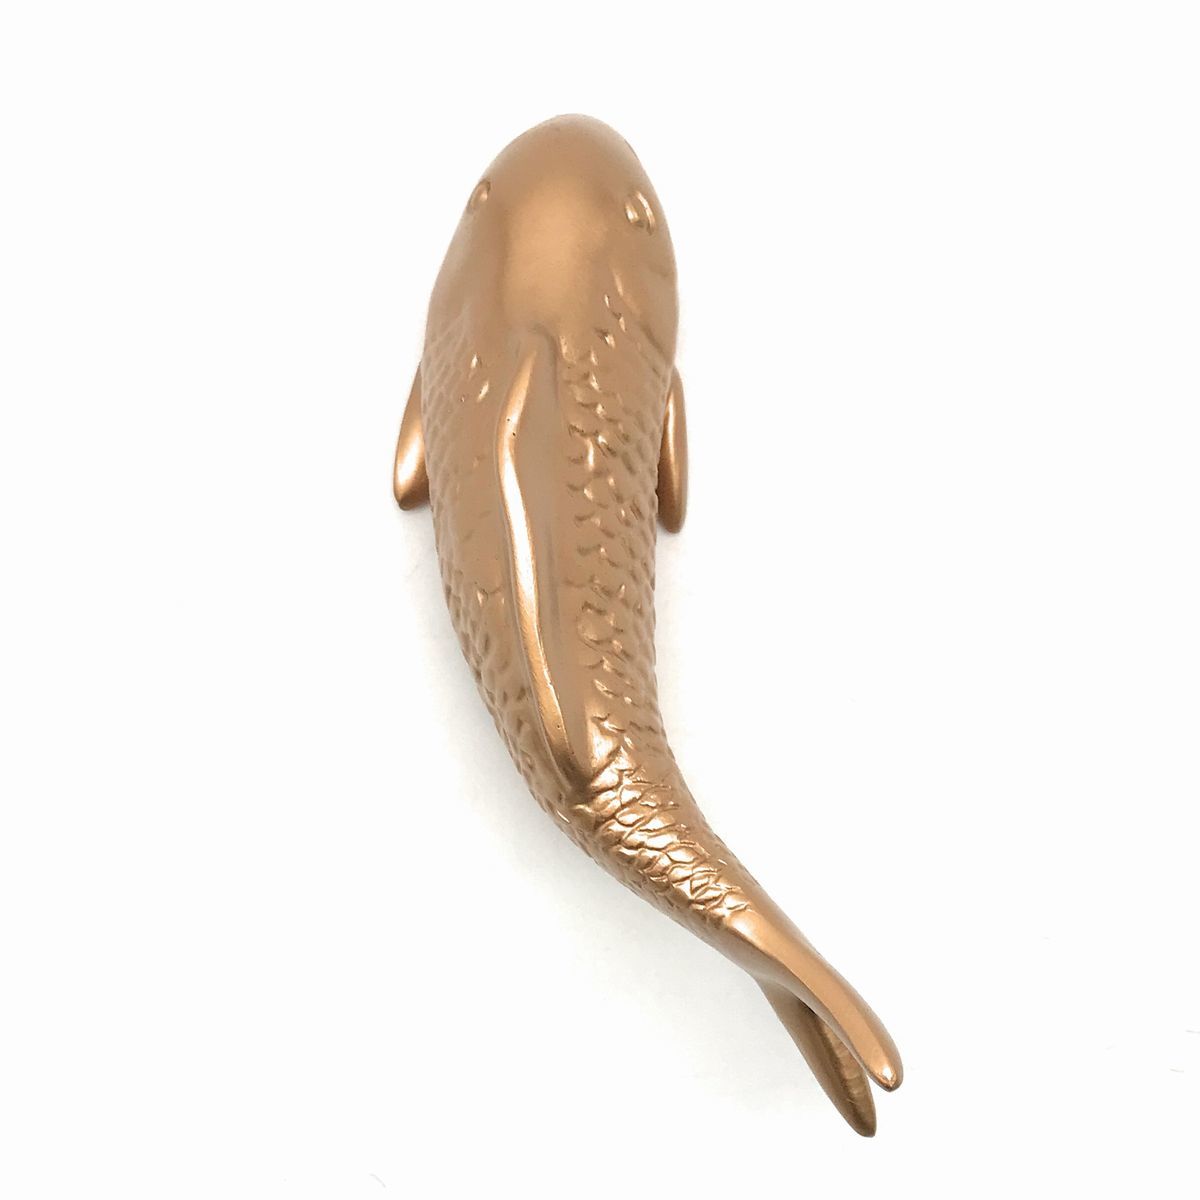 Настенный подвесной предмет для плавания Koi Elegant (золотой), верно), Изделия ручной работы, интерьер, разные товары, орнамент, объект